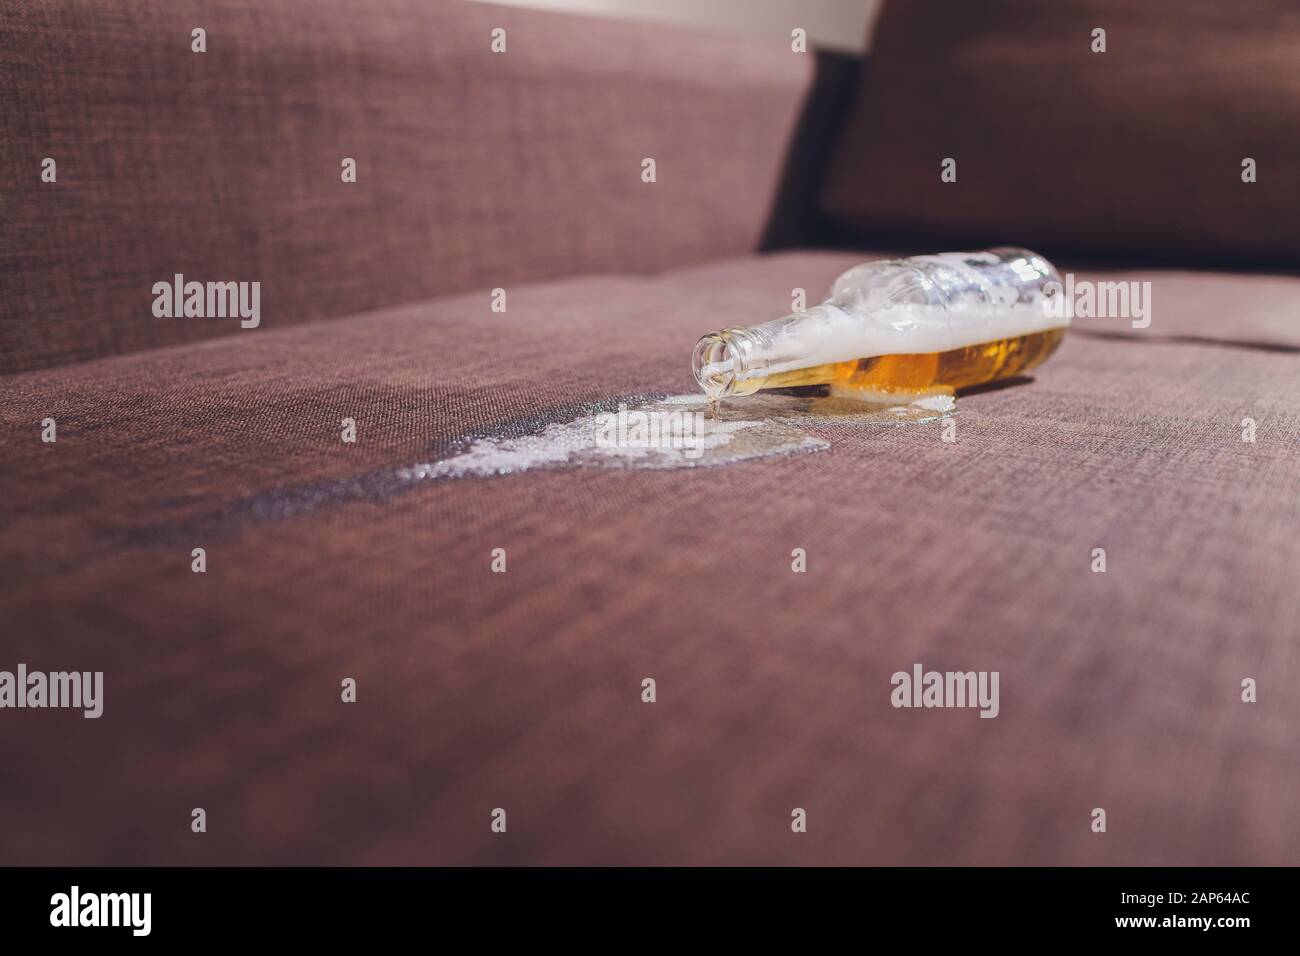 Alkoholismus in der Familie. Bierflasche und ausgelaufenes Bier auf dem  Sofa Stockfotografie - Alamy